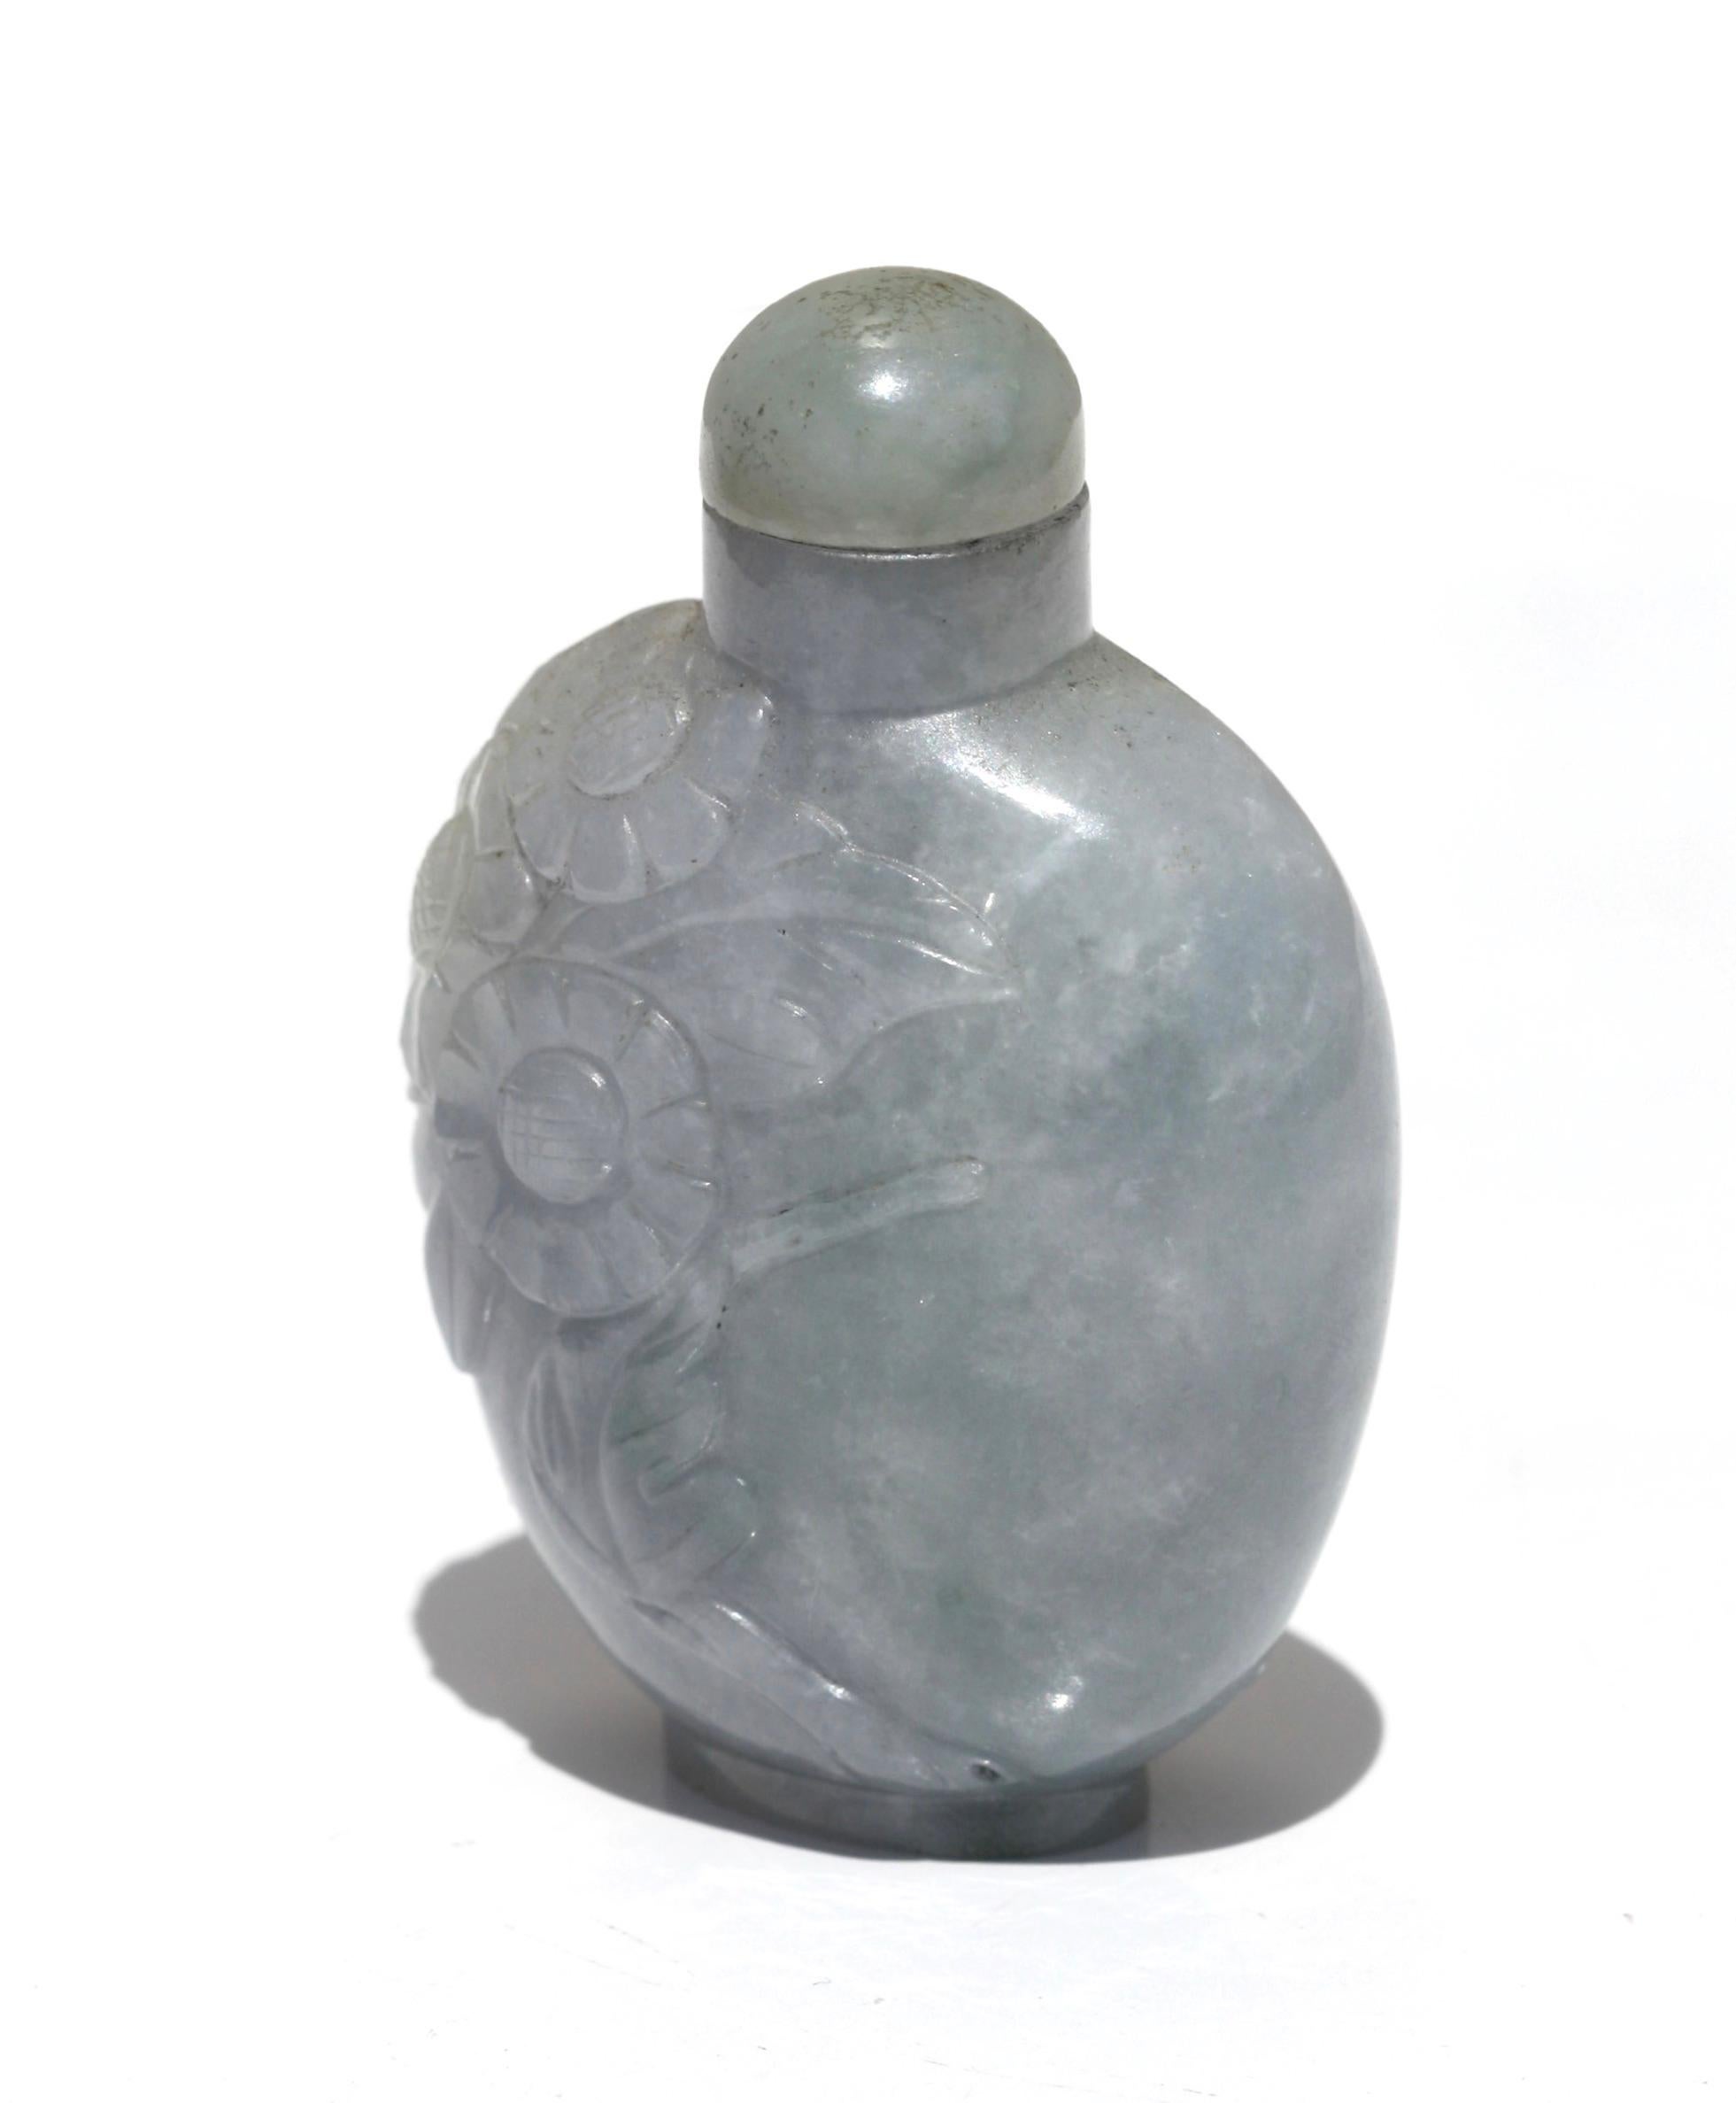 Chinesische Schnupftabakflasche aus Jade mit Stopfen
abgeflachter, kugelförmiger Körper, durchgehend mit einer Blume beschnitzt, der Stein von weißlich-grauem und lavendelfarbenem Ton, Jadestopfen
Maße: 5.72 cm, 2.25 in.